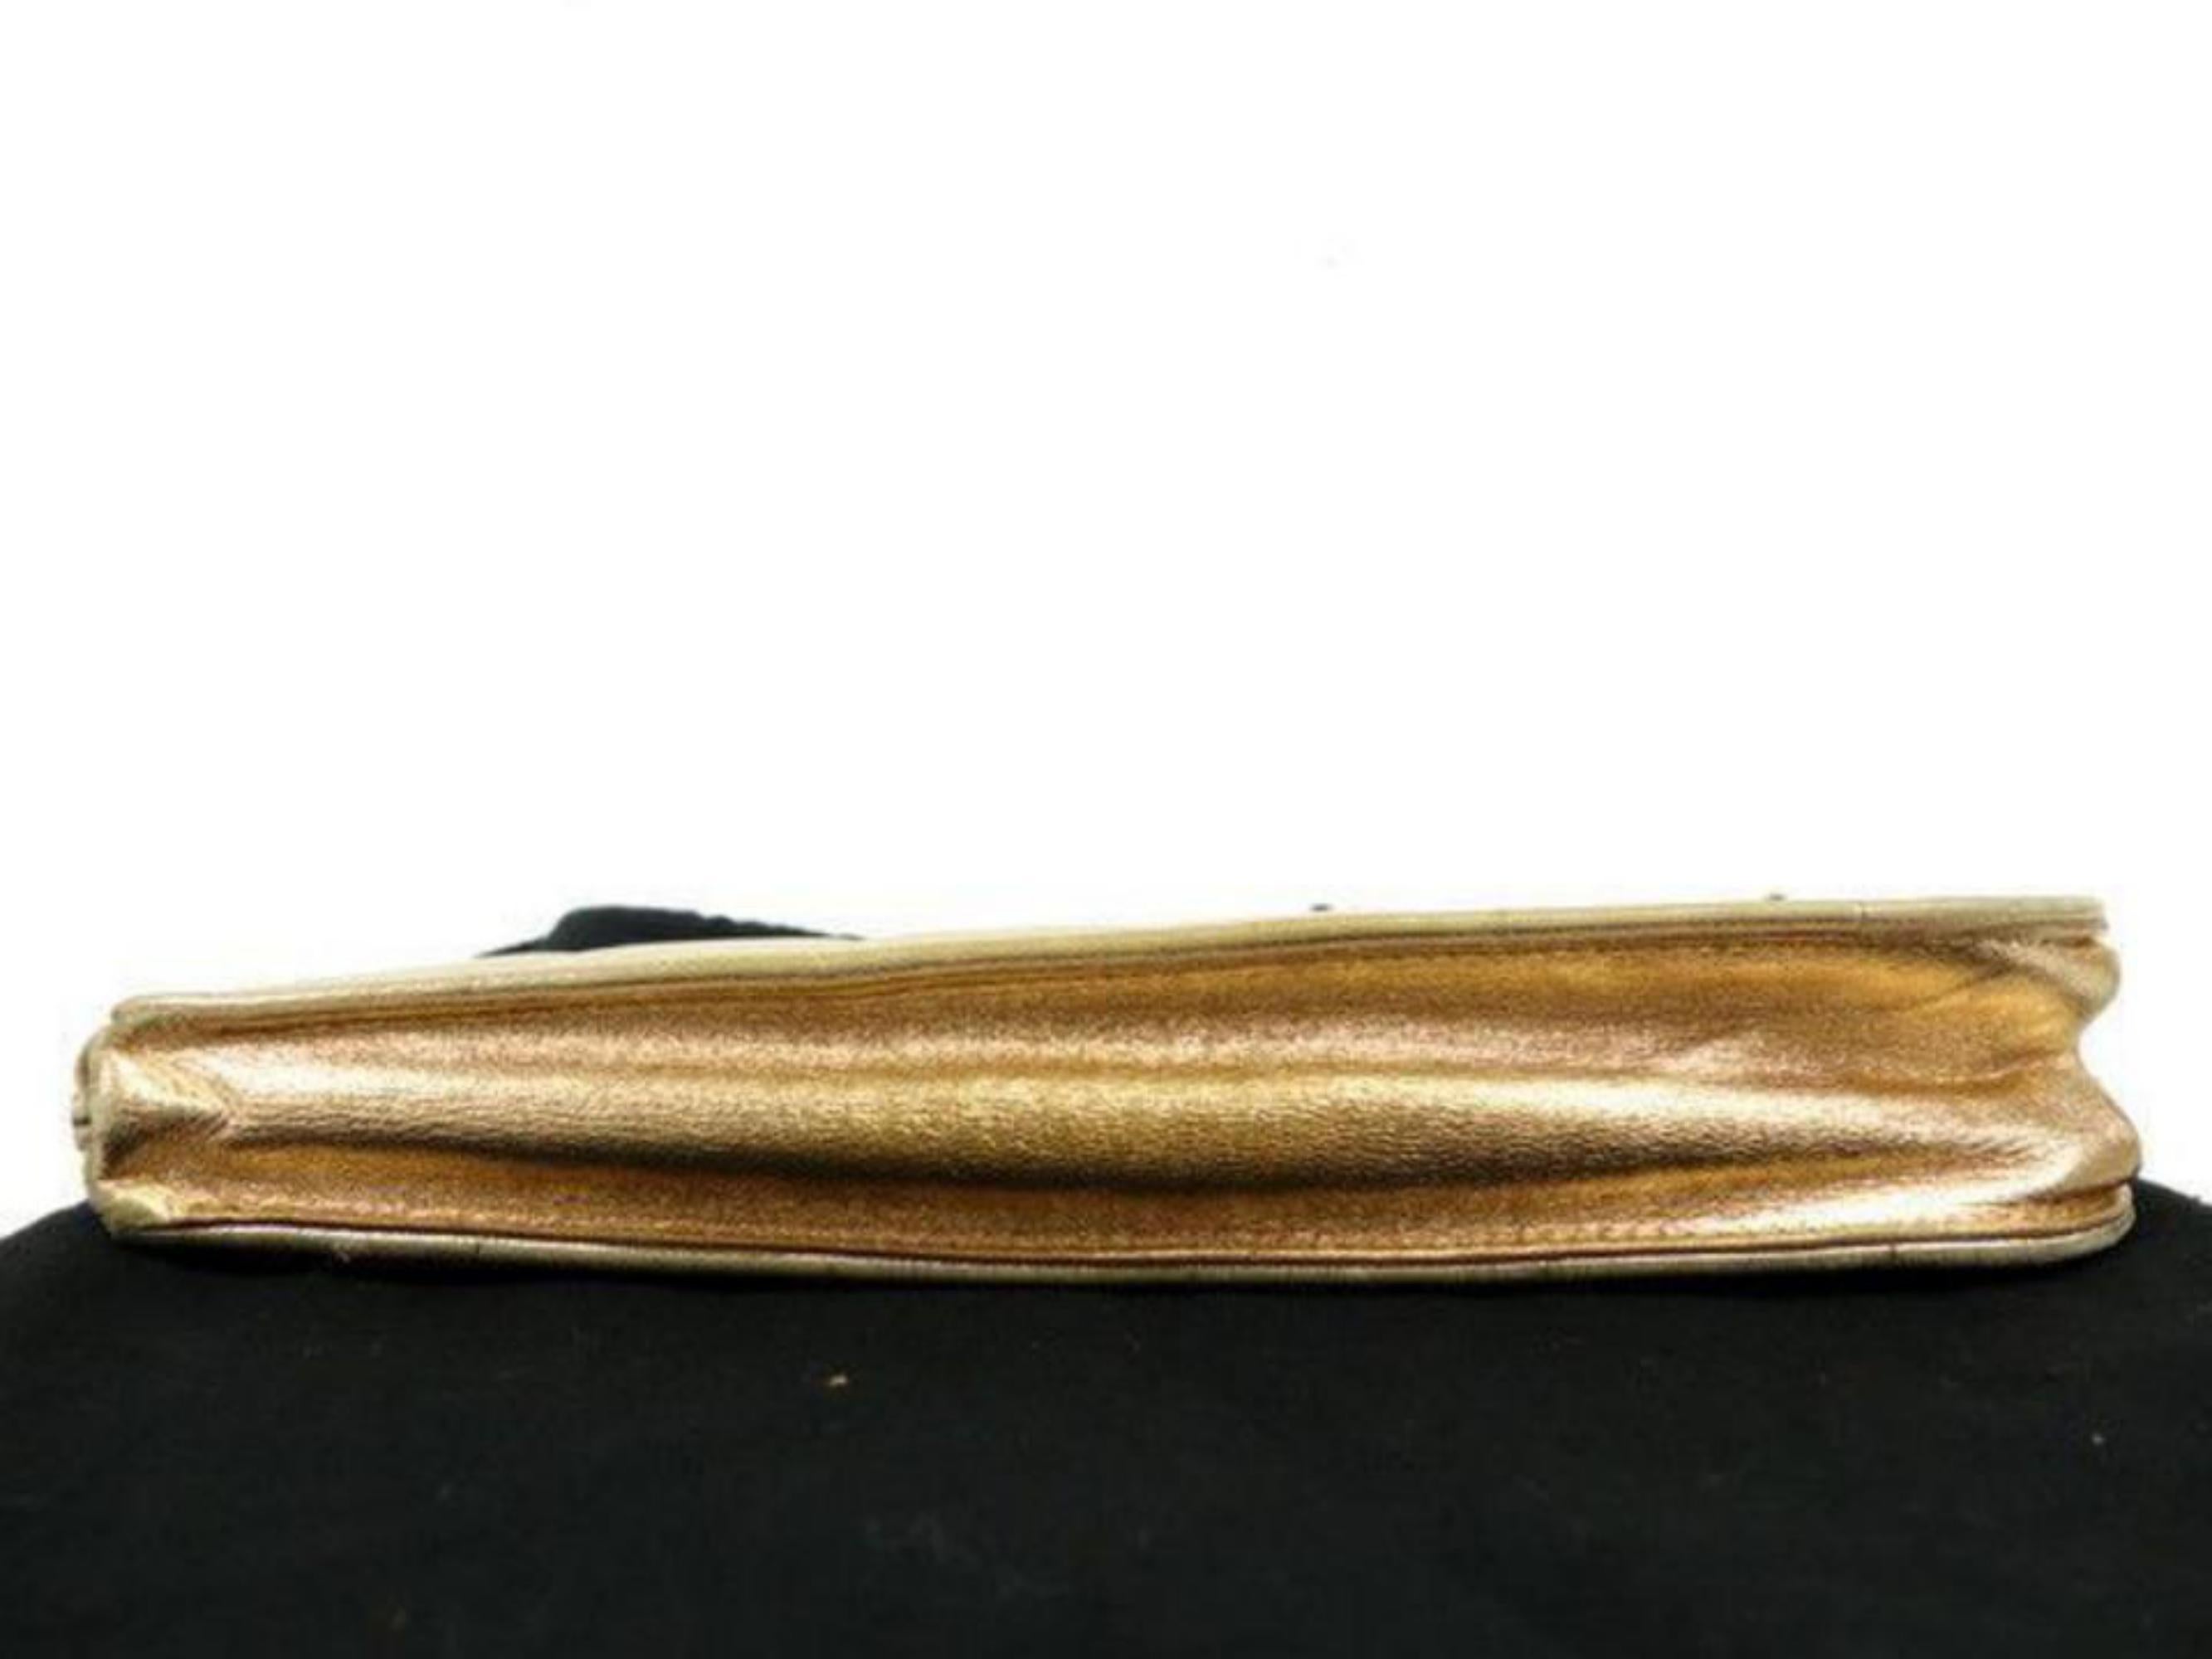 chanel gold bar clutch